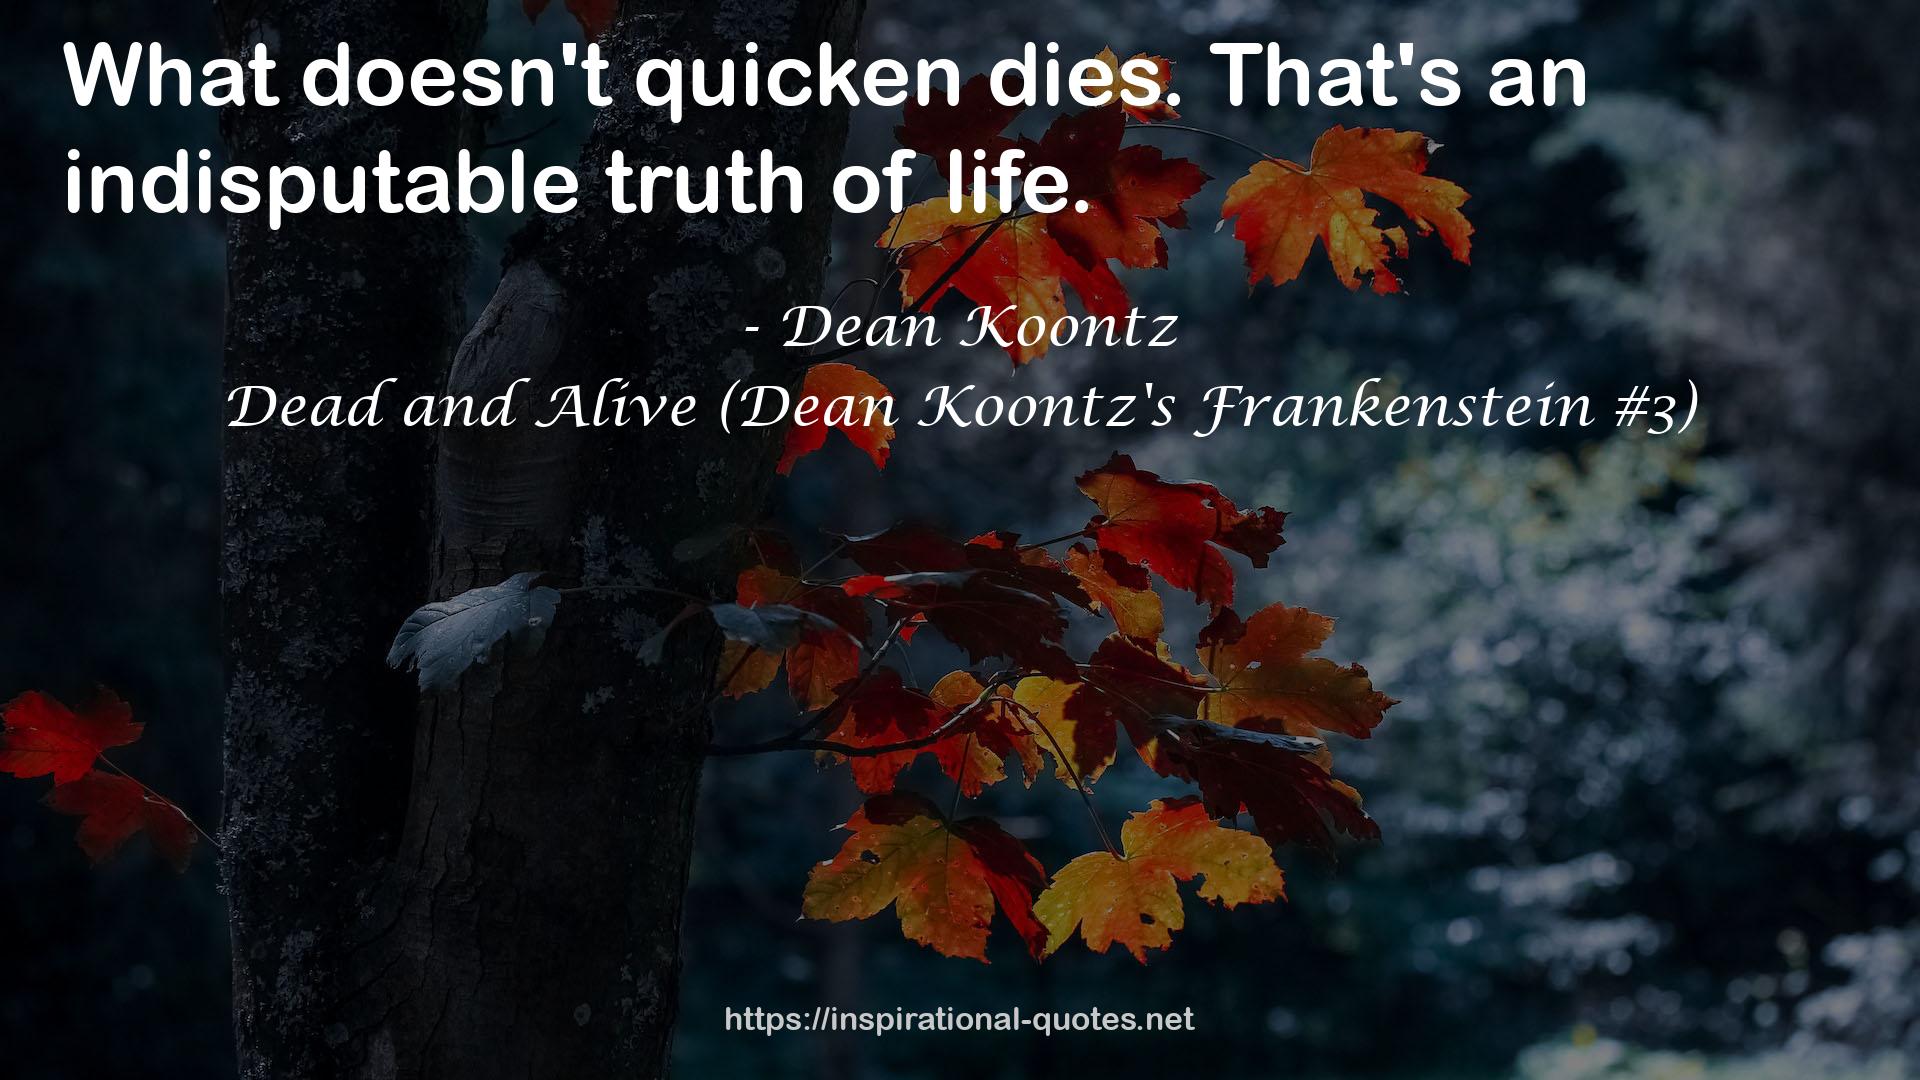 Dead and Alive (Dean Koontz's Frankenstein #3) QUOTES